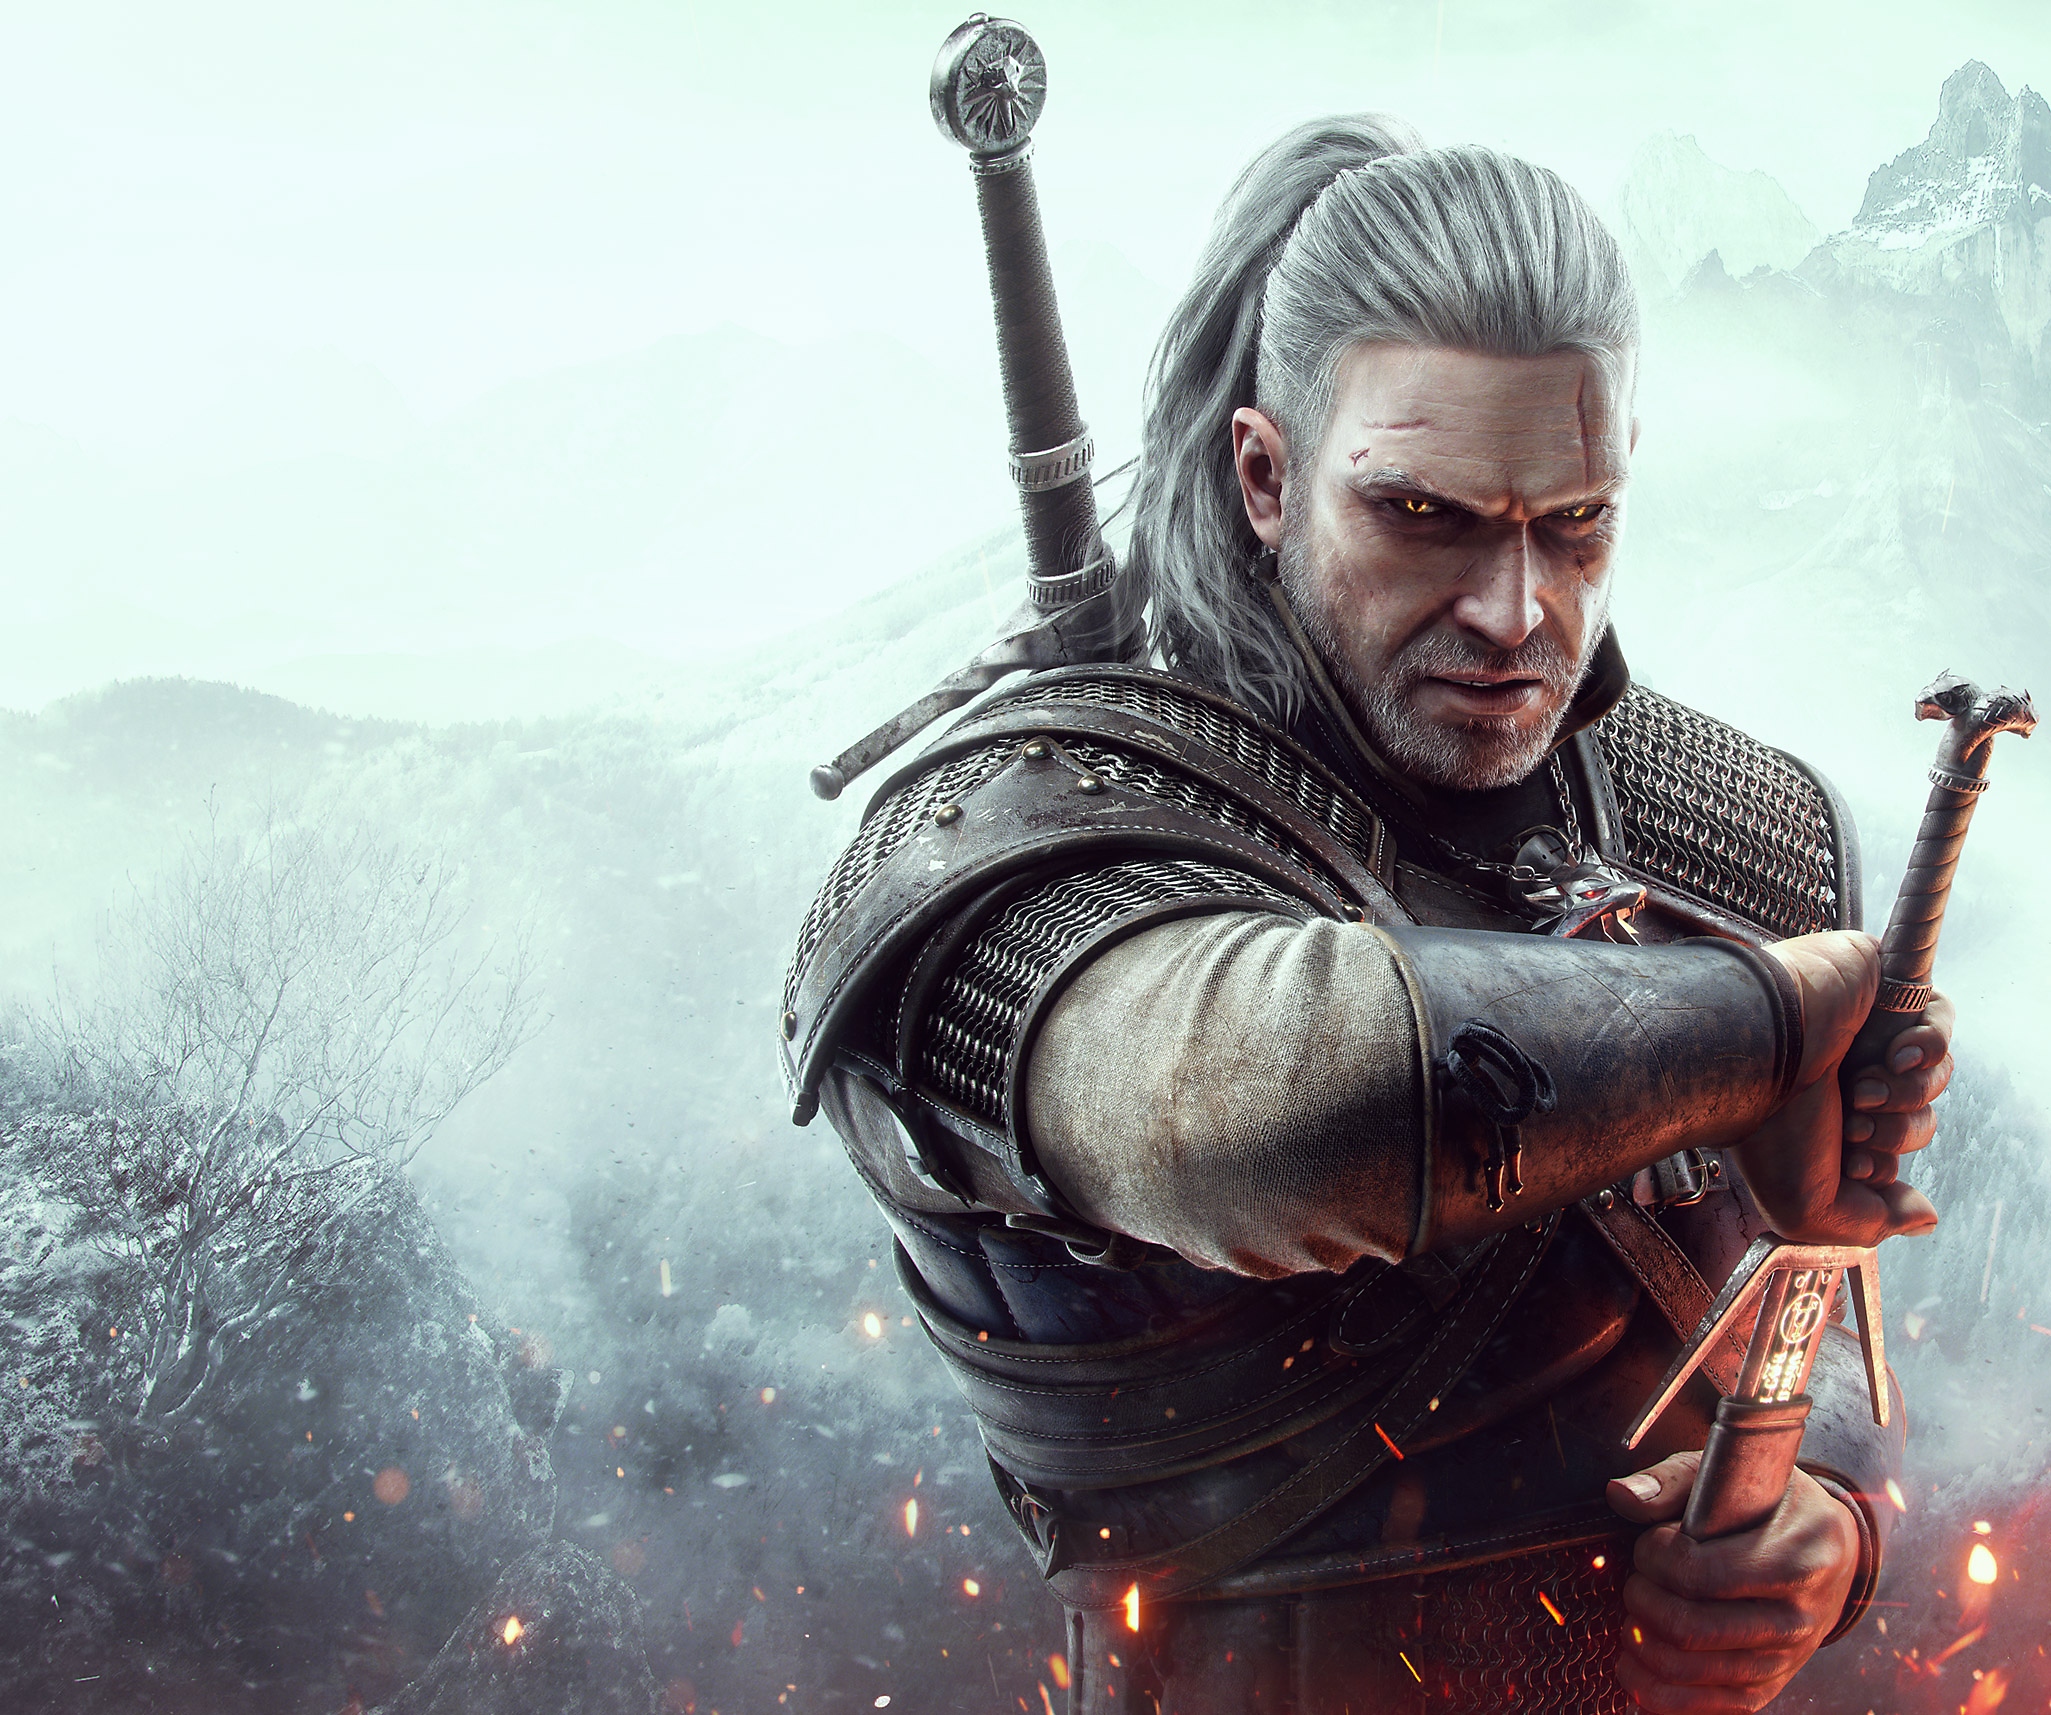 The Witcher 3-afbeelding van hoofdpersonage Geralt of Rivia die zijn zwaard uit de schede trekt.